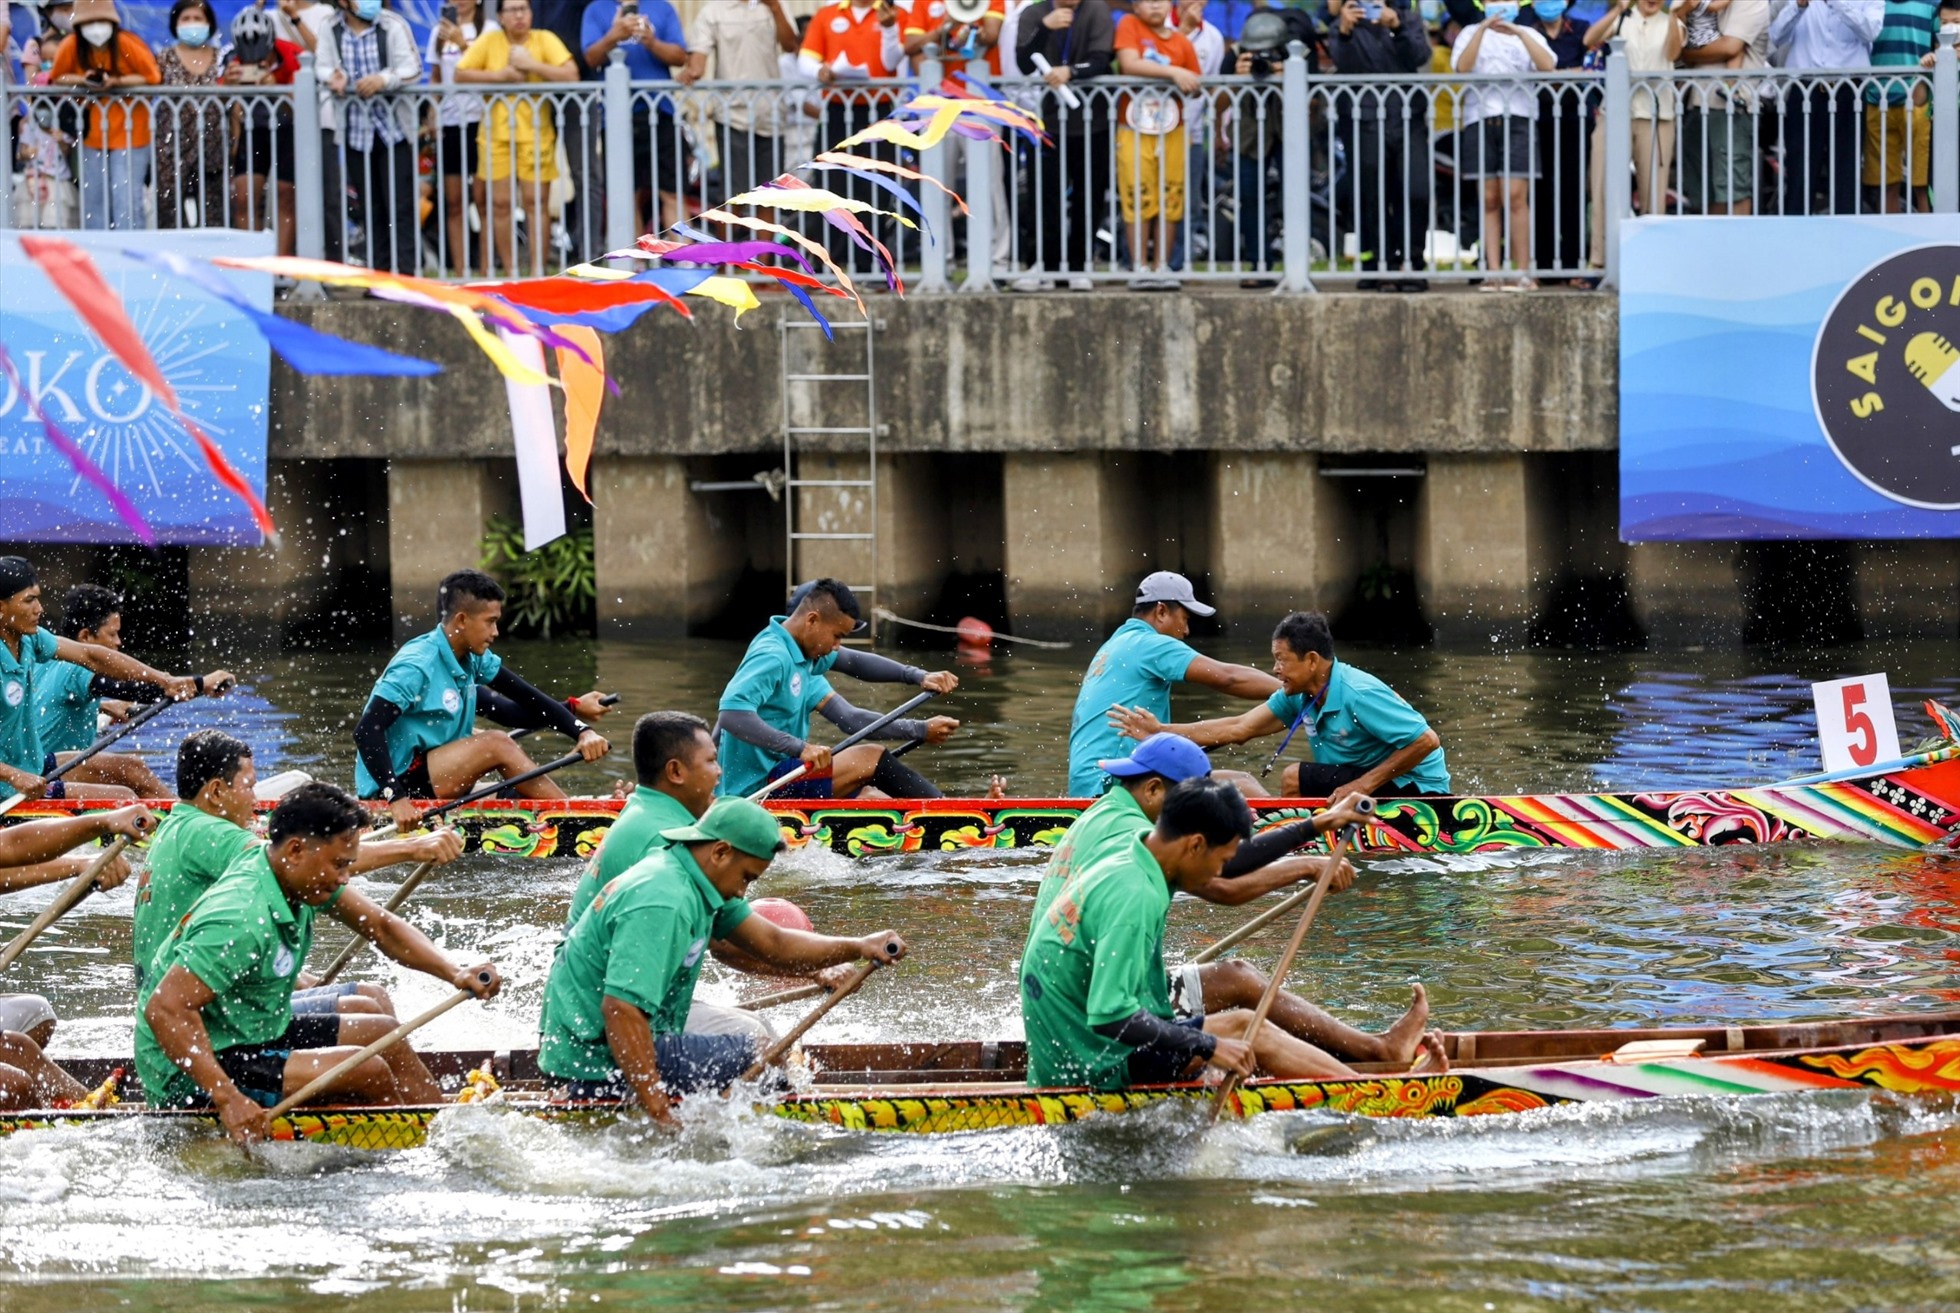 Lễ hội đua ghe Ngo năm nay với sự tham gia của 9 đội dự thi đến từ quận 3 và các tỉnh thành khu vực phía Nam gồm Bình Dương, Tây Ninh, Bình Phước, Kiên Giang.